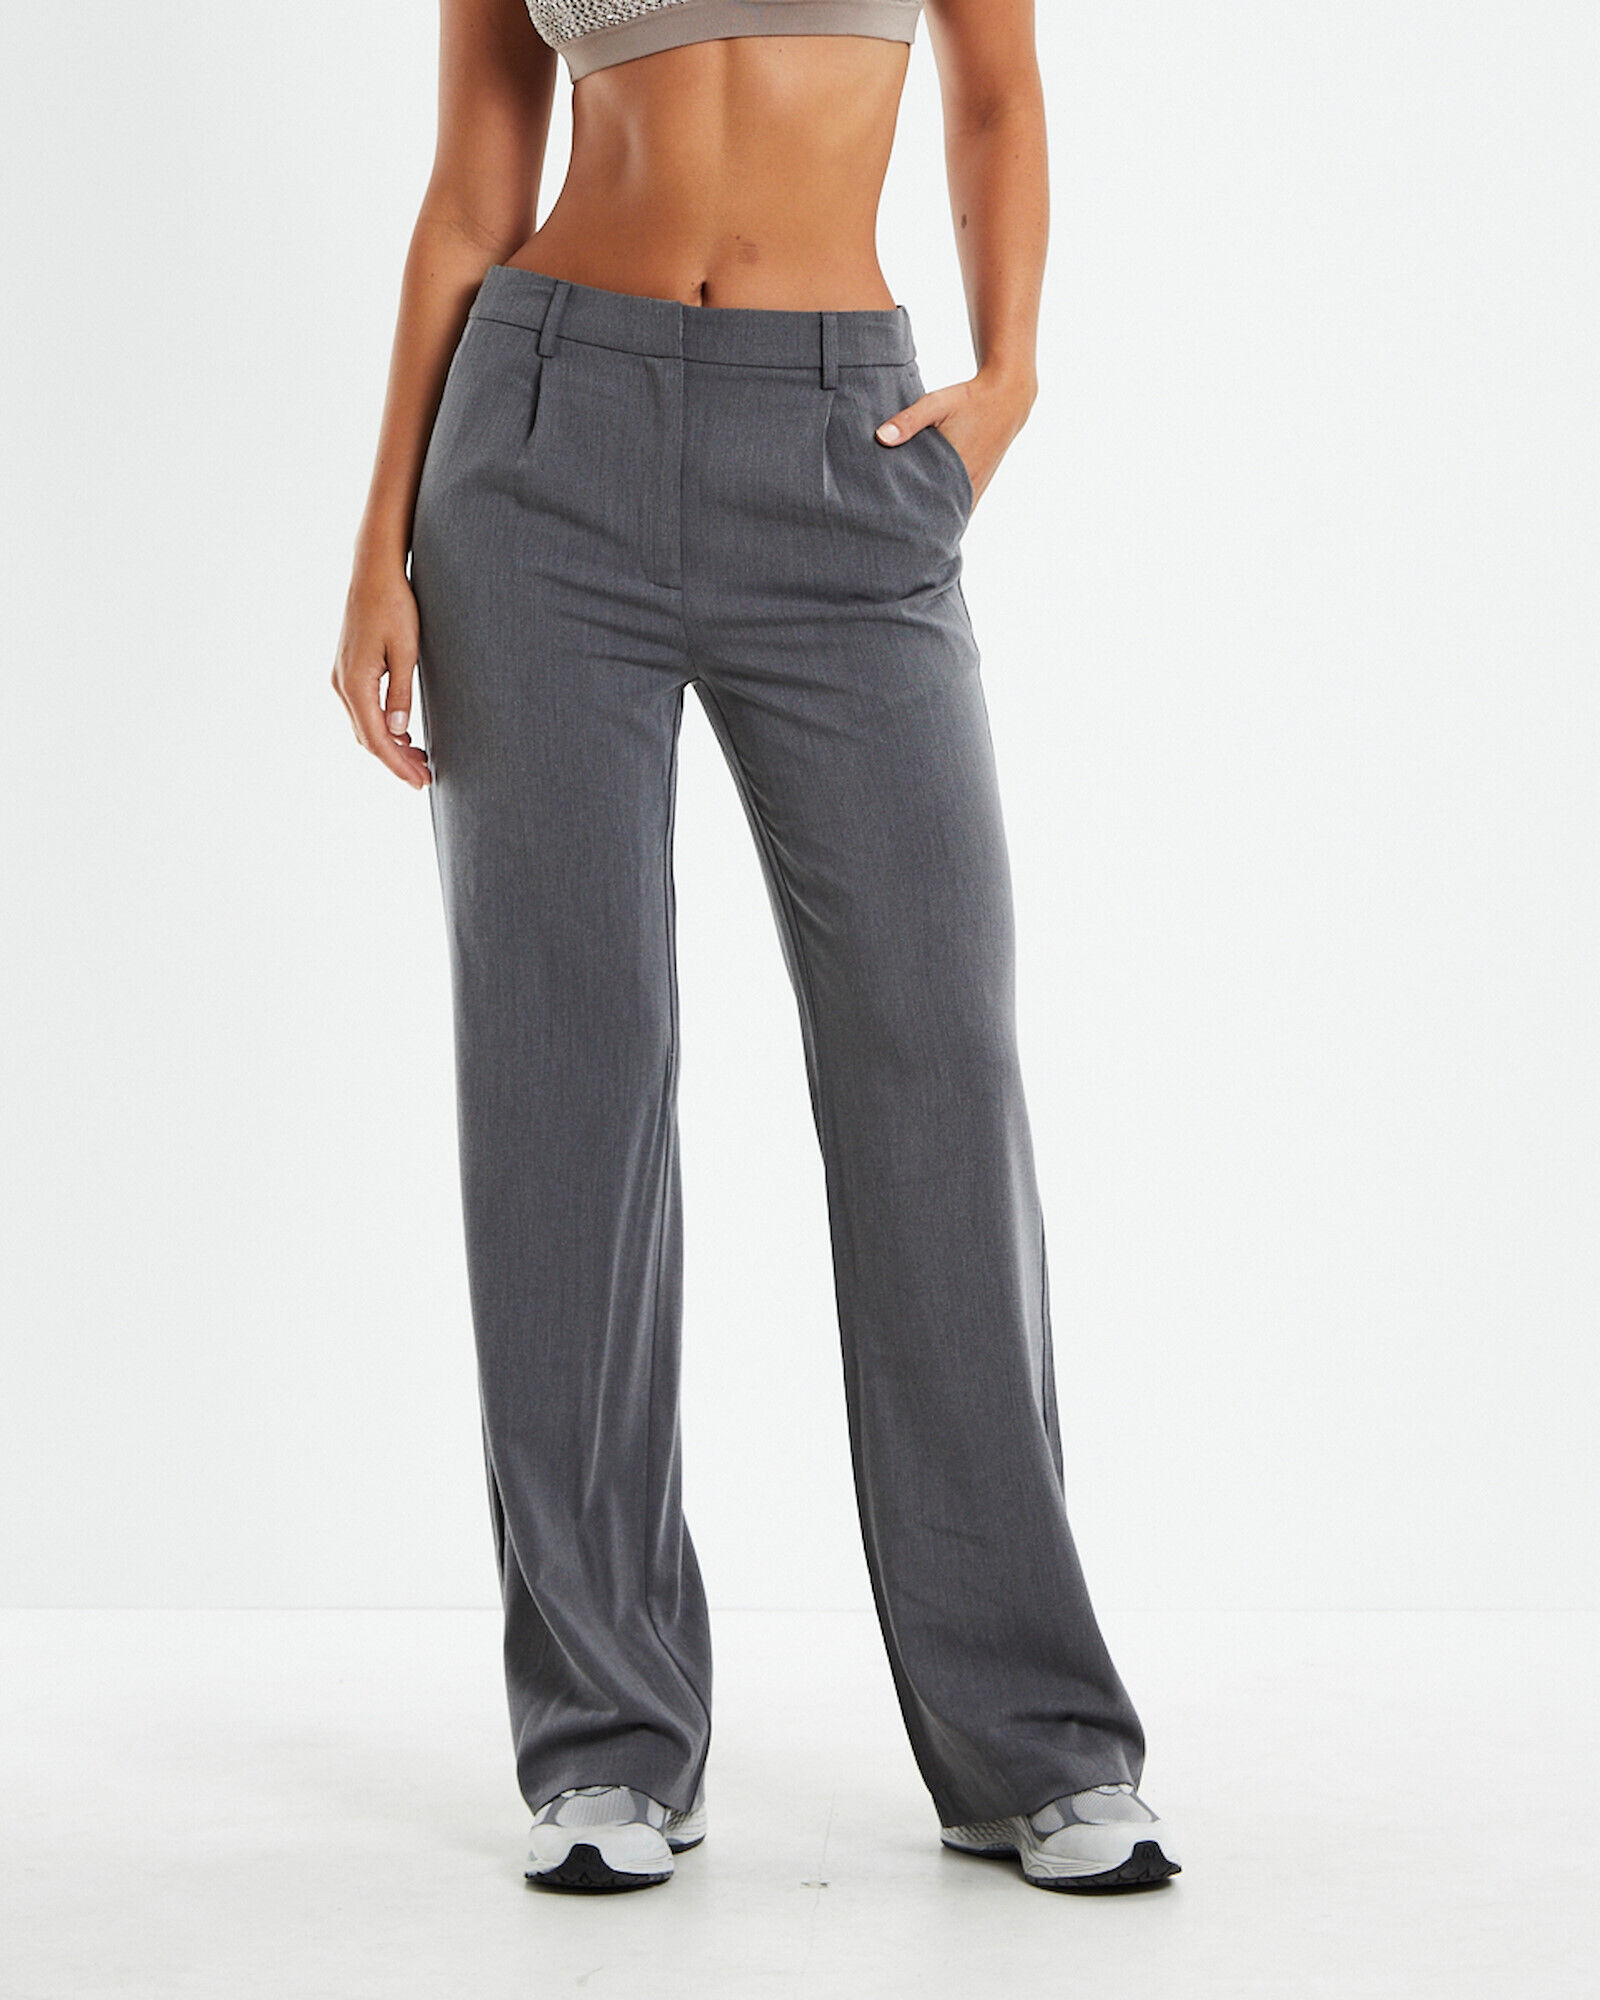 Low Waist Flared Pants - Black - Ladies | H&M US